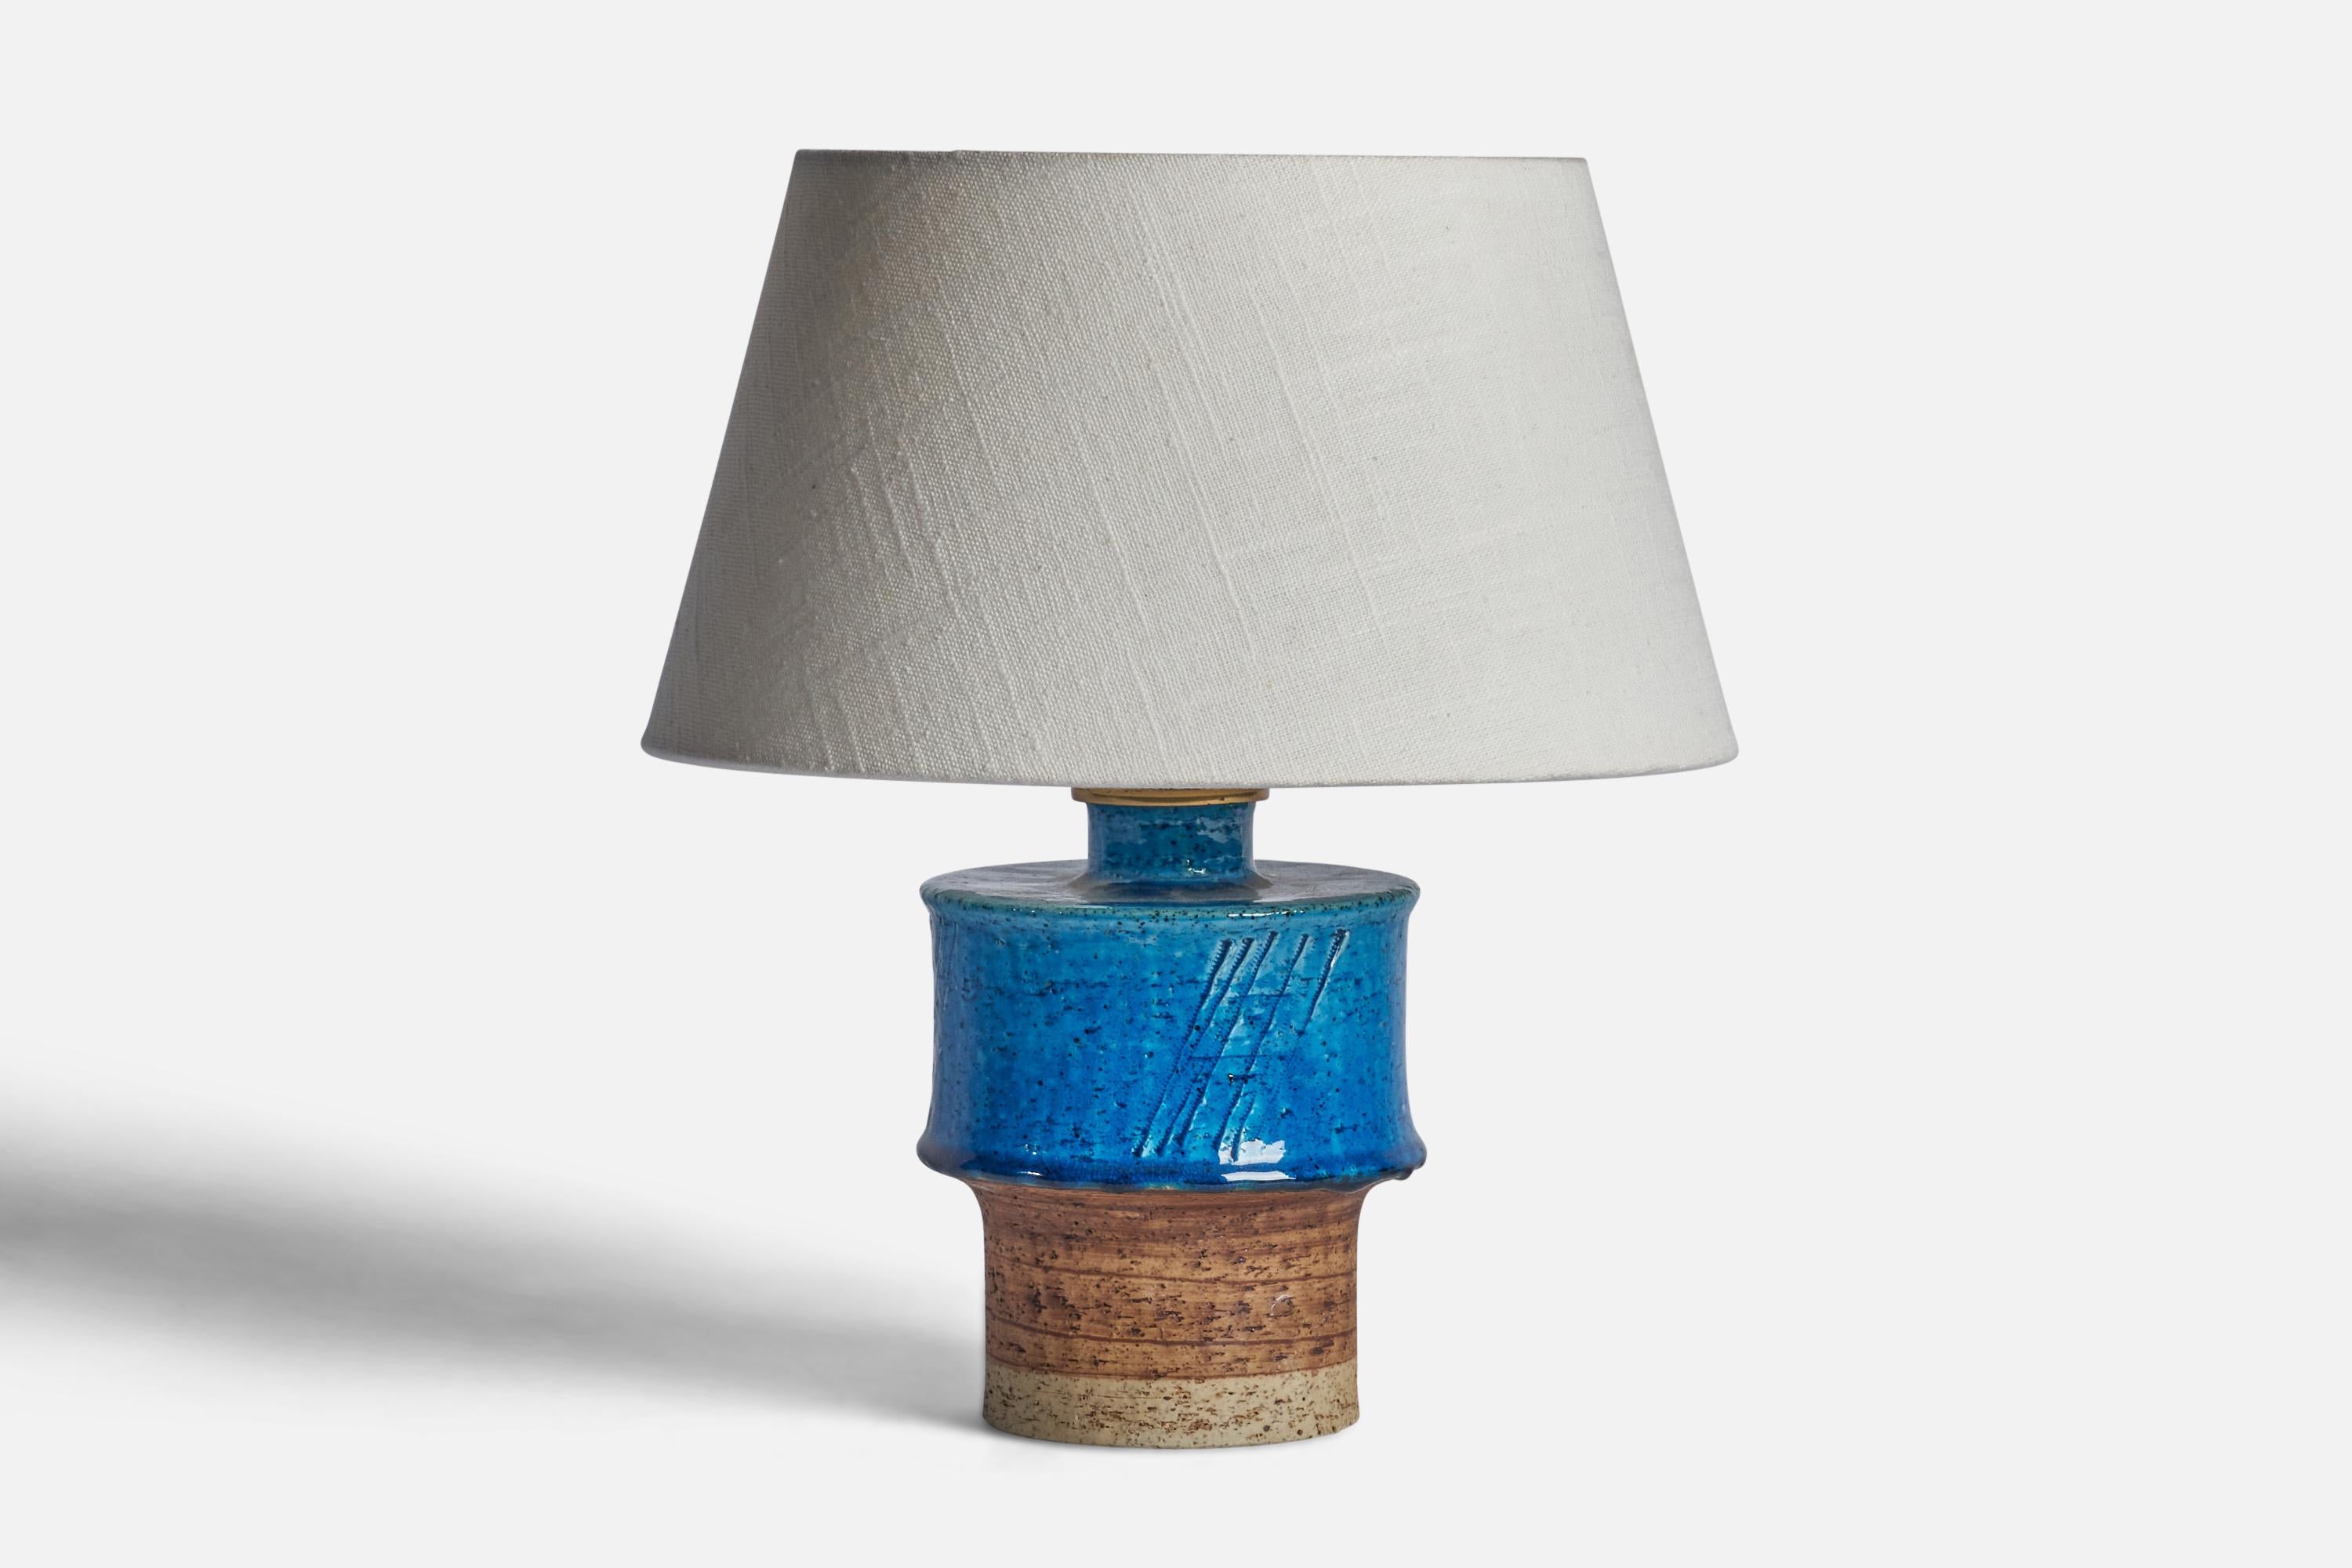 Lampe de table en grès émaillé brun et bleu, conçue par Inger Persson et produite par Rörstrand, Suède, années 1960.

Dimensions de la lampe (pouces) : 8.25